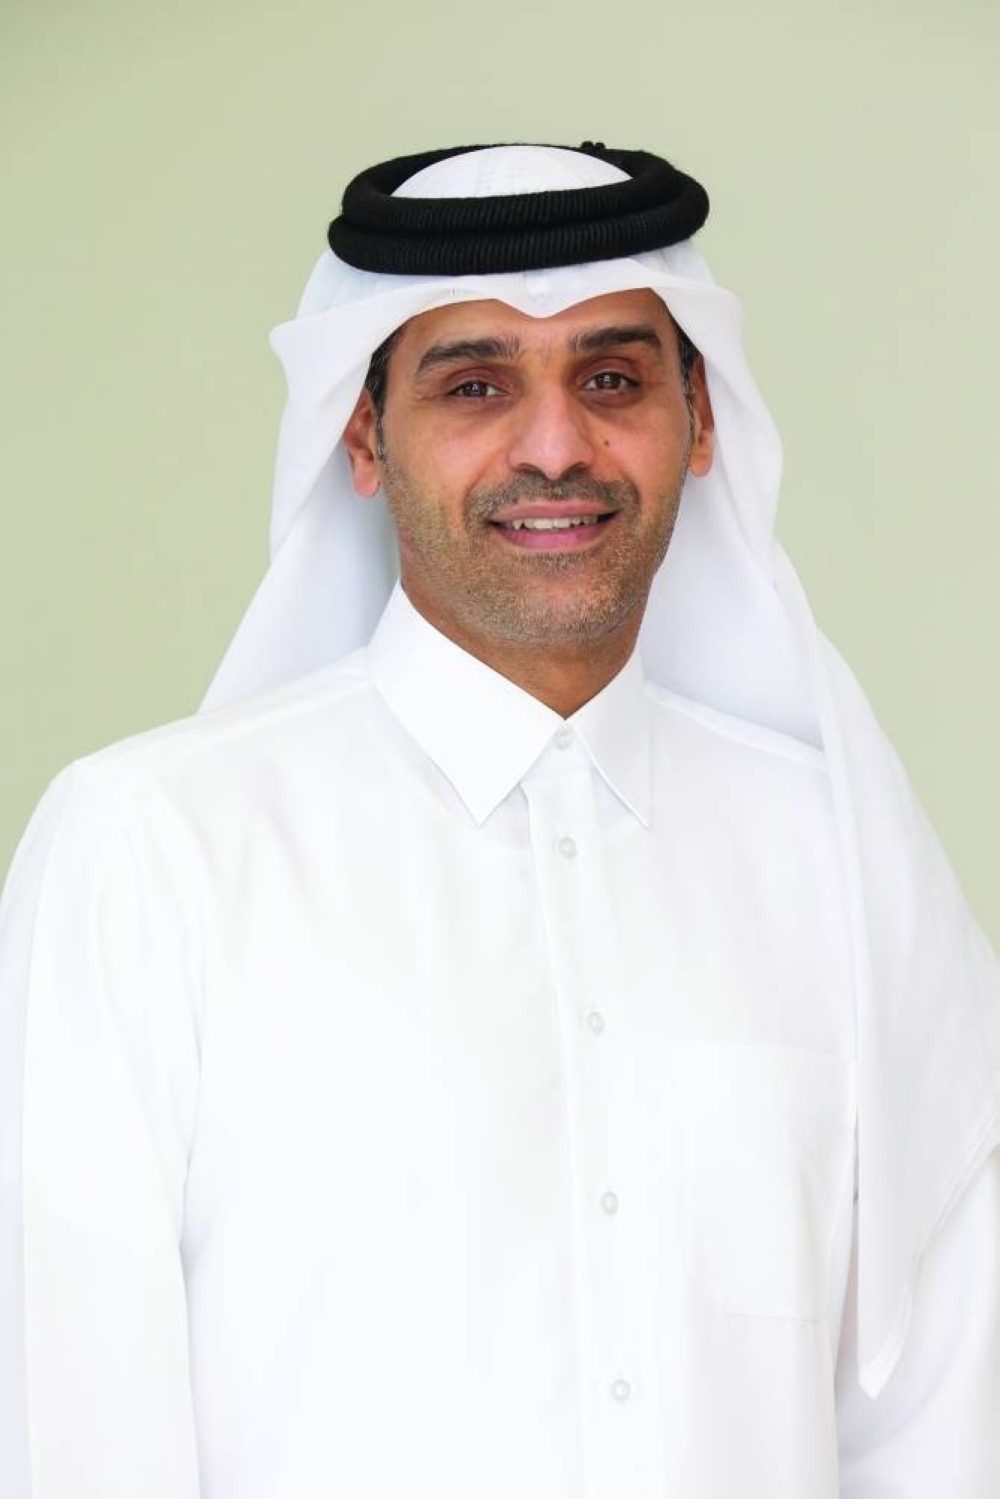 Ooredoo Qatar CEO Sheikh Mohamed bin Abdulla al-Thani